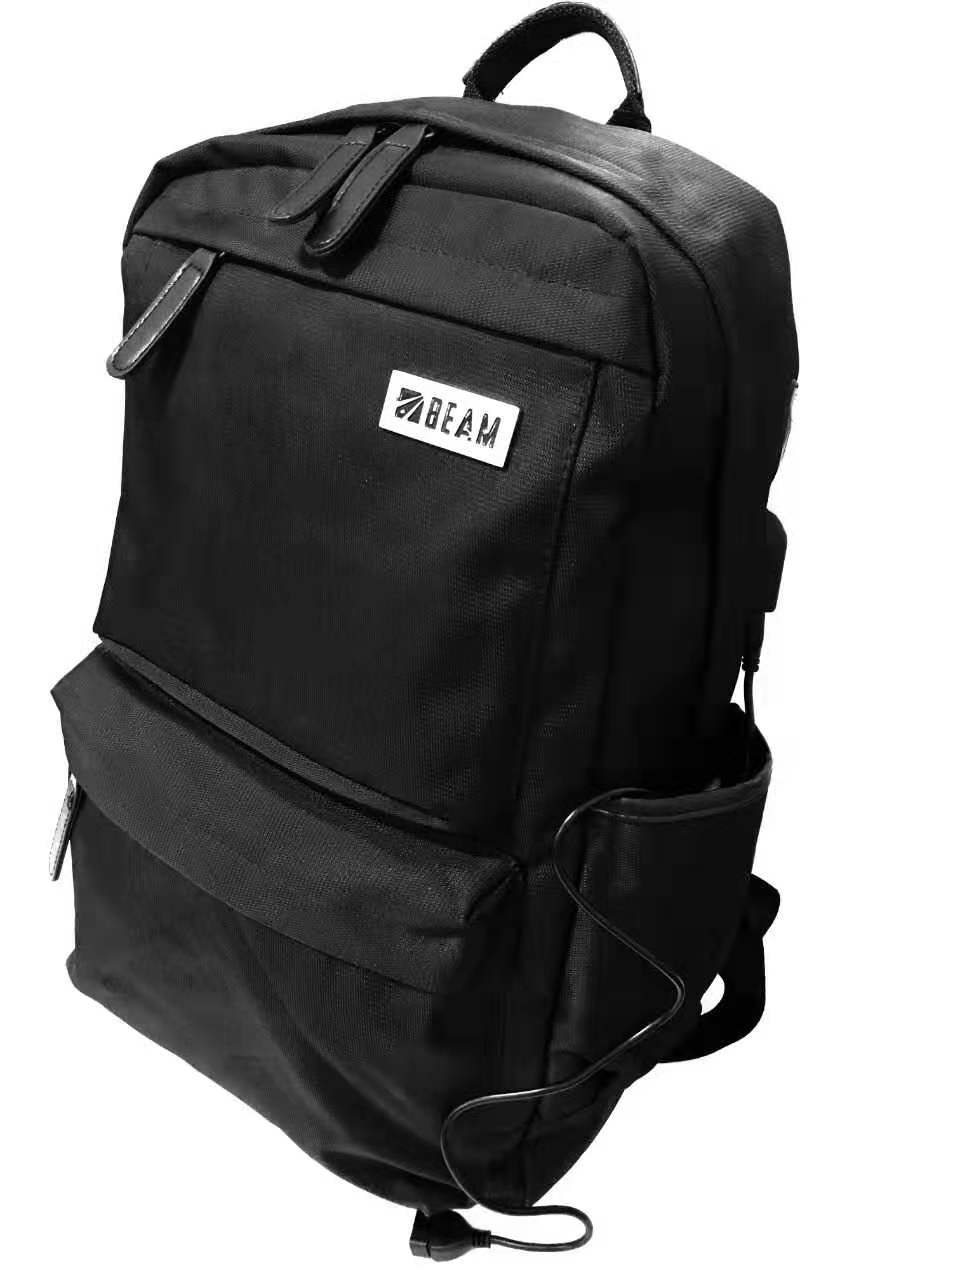 Beam Back Bag Laptop Case 15.6″ BM1004 Black